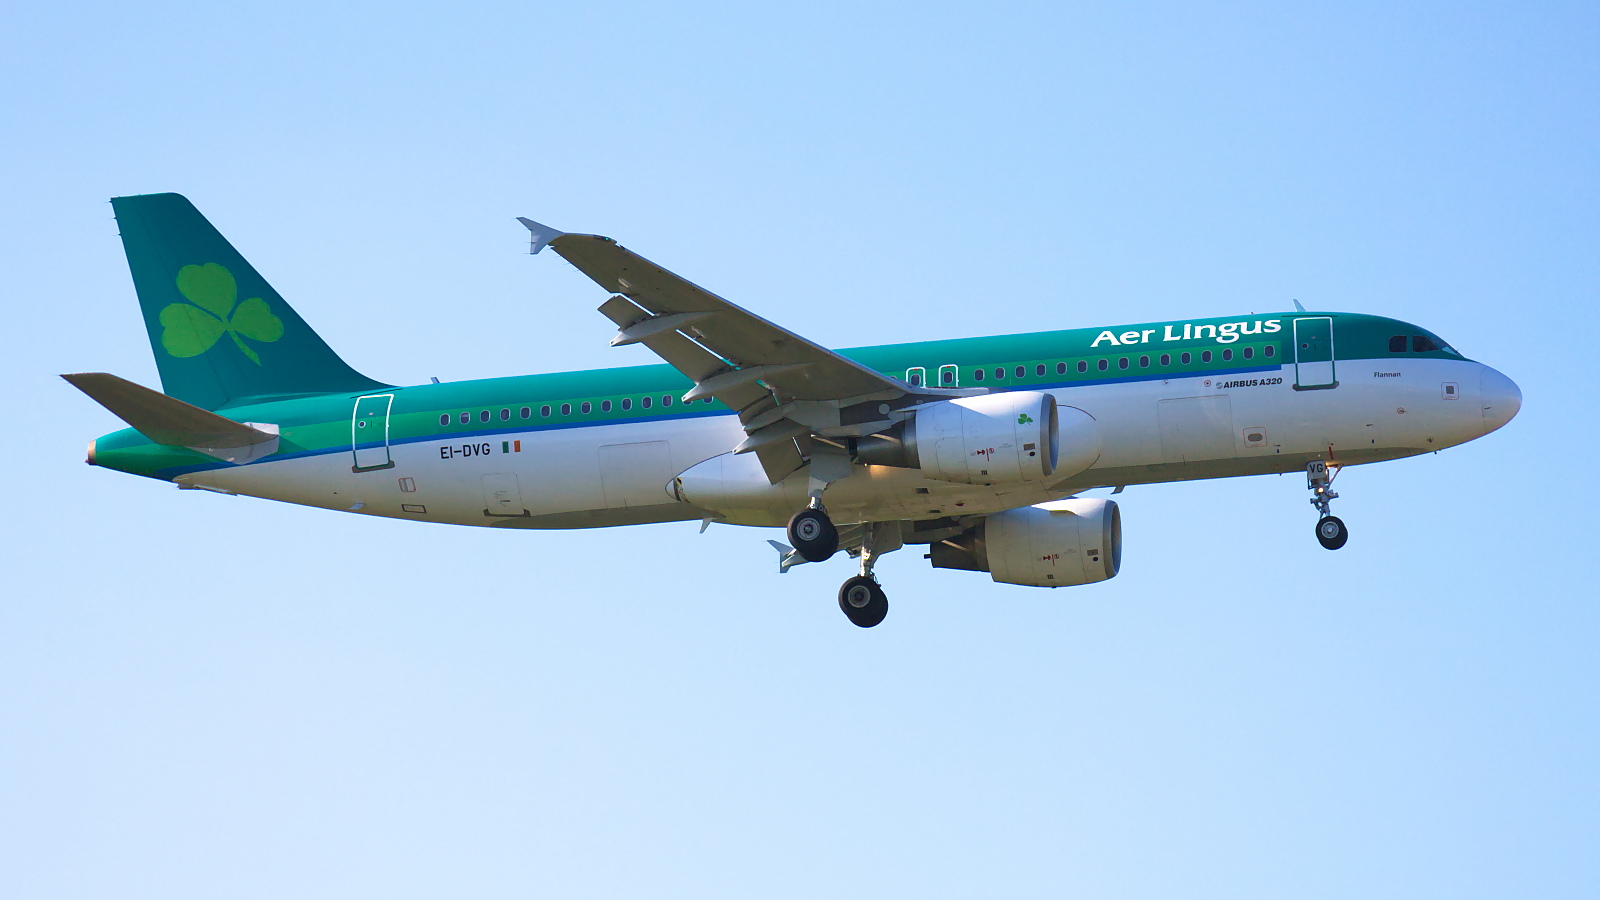 EI-DVG ✈ Aer Lingus Airbus A320-214 @ London-Heathrow